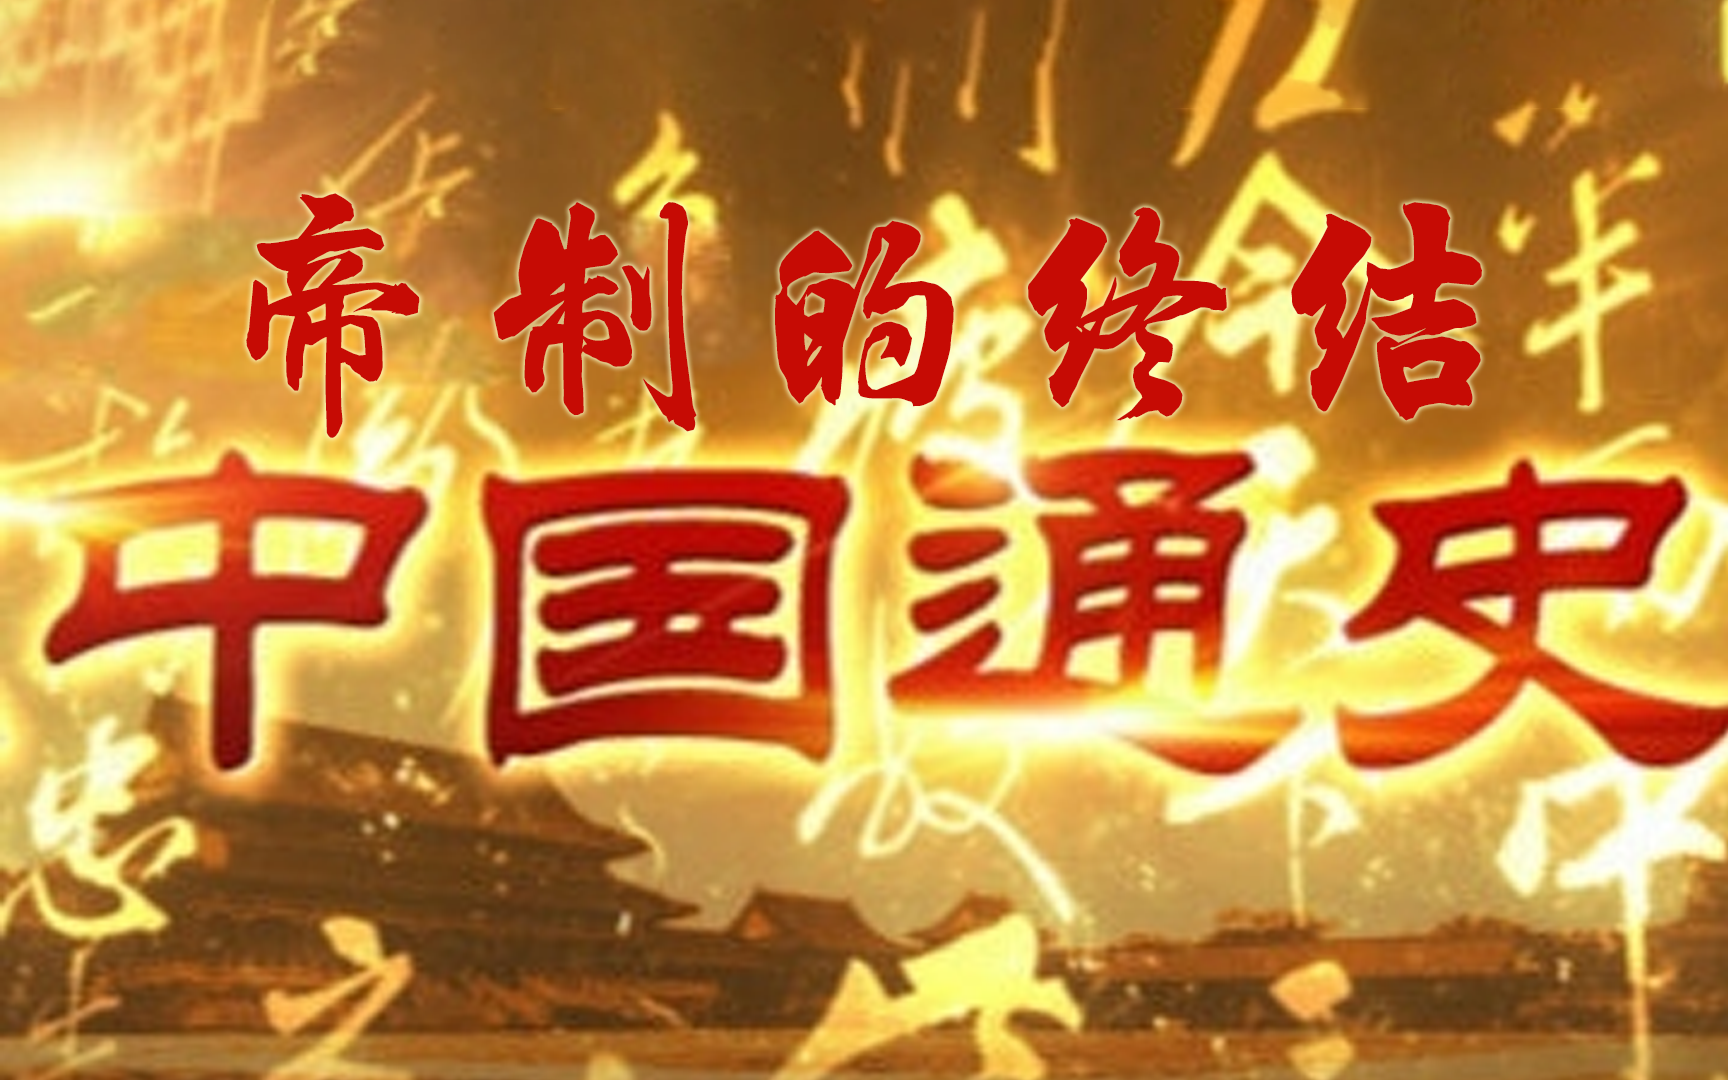 【纪录片】《中国通史》第100集《帝制的终结》